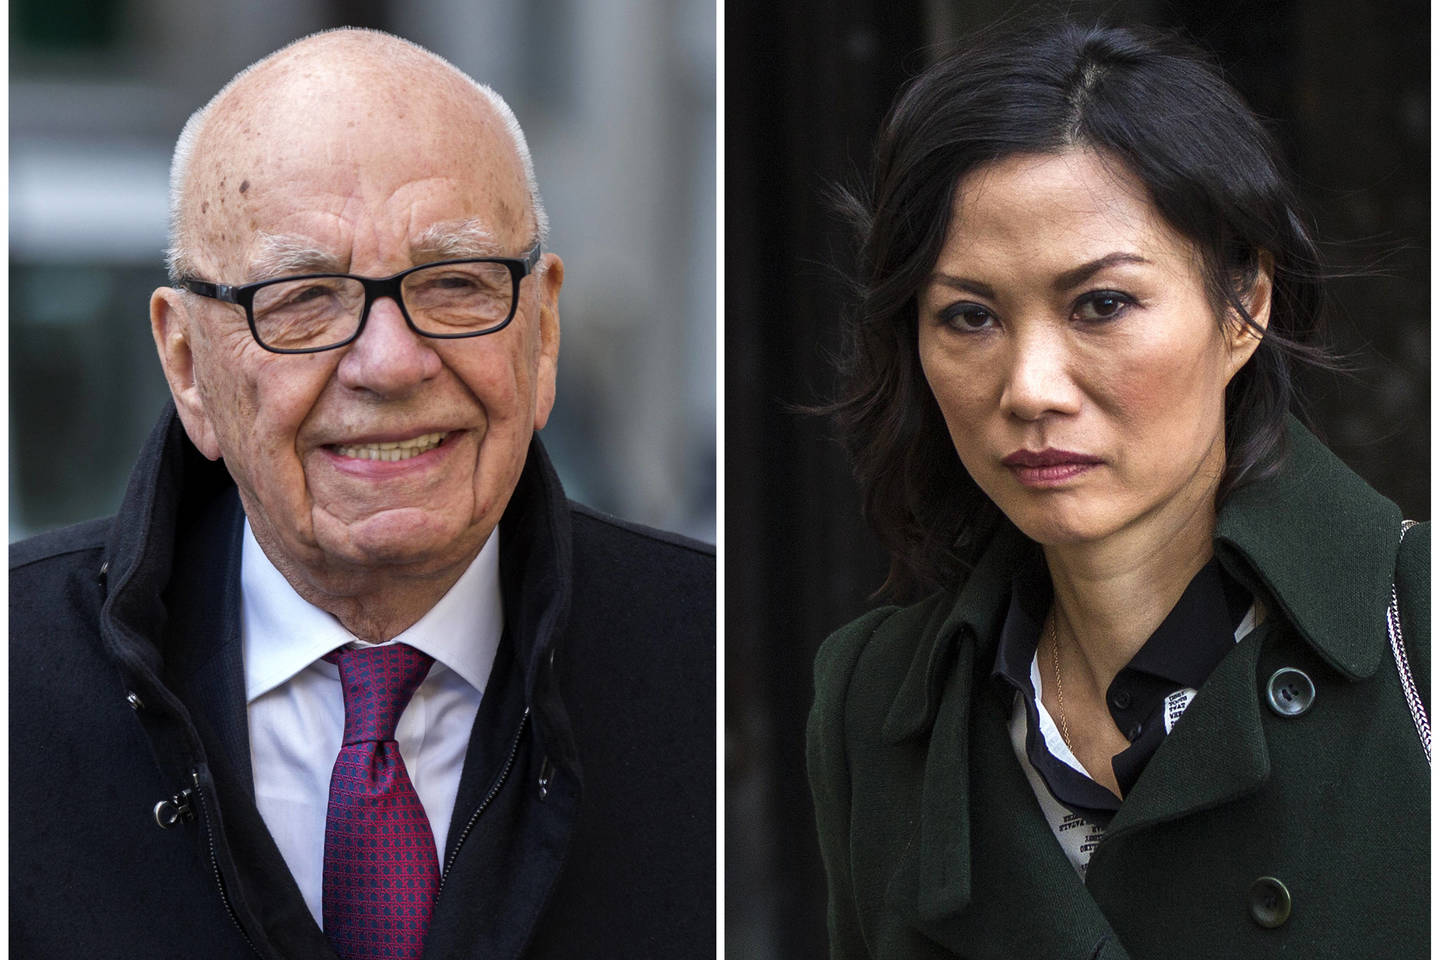 Kinijoje gimusi JAV pilietė W. Deng Murdoch 1999 metais ištekėjo už australų verslininko R. Murdocho. 2013 metais R. Murdochas pateikė skyrybų prašymą.<br> Reuters/Scanpix nuotr. 